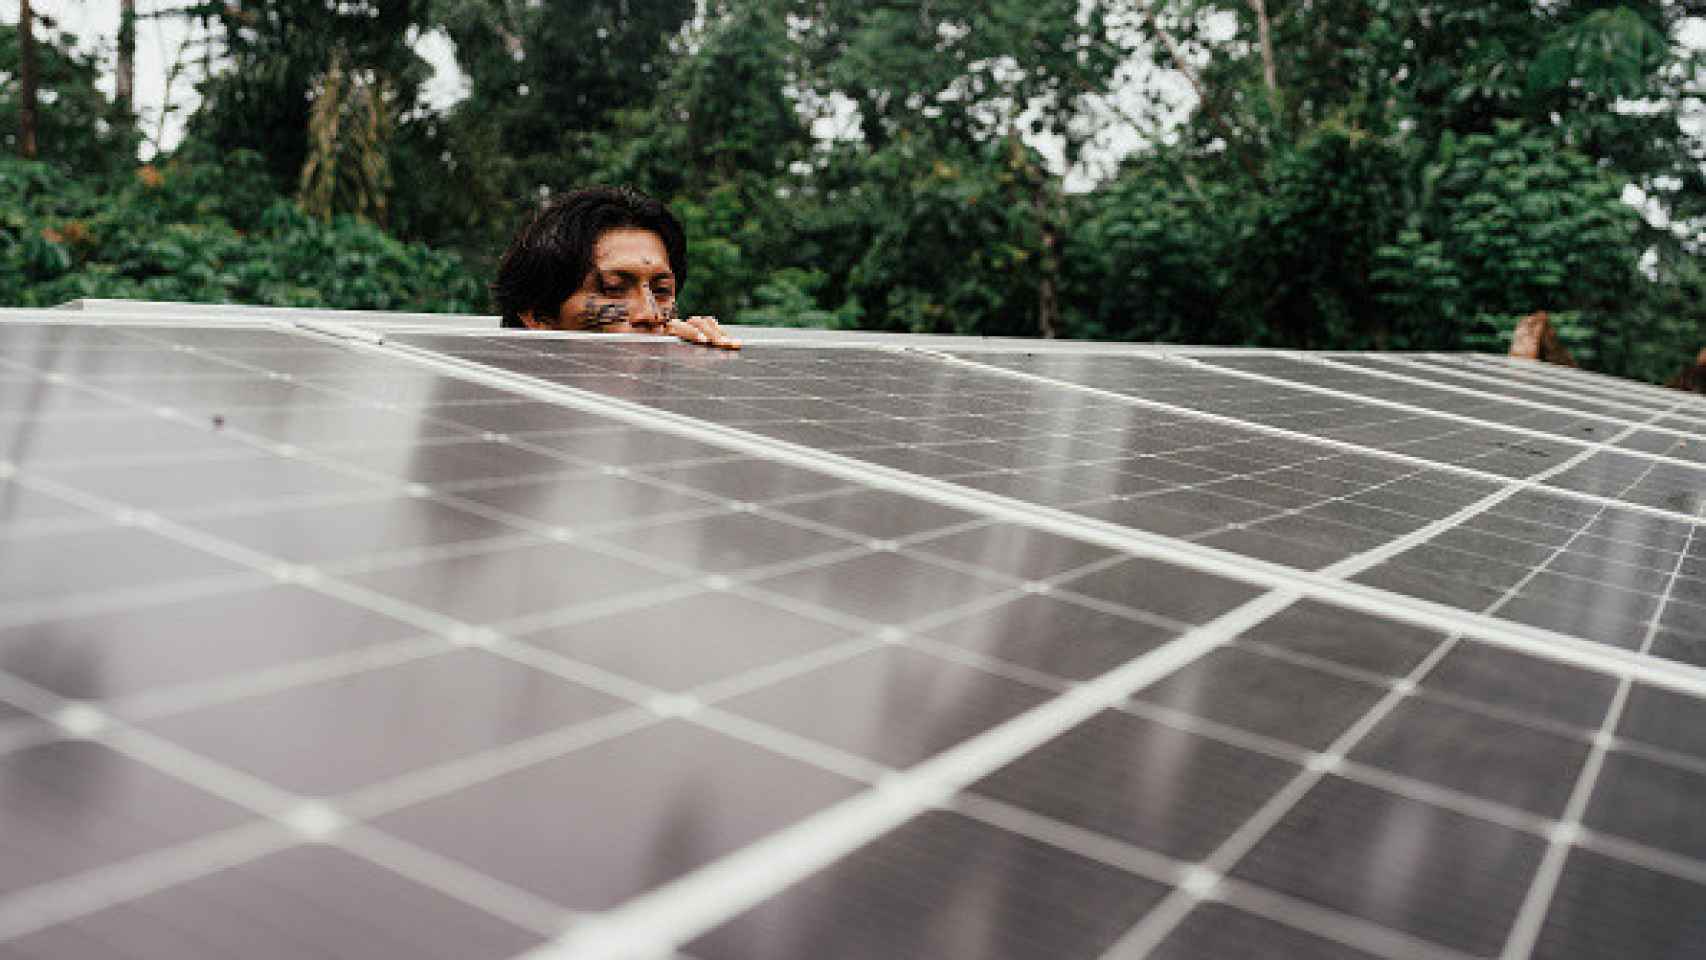 Un electricista observa algunos de los paneles que componen el huerto solar de Wichimi y que ayudan a recargar el barco eléctrico Wampi. Wichimi.